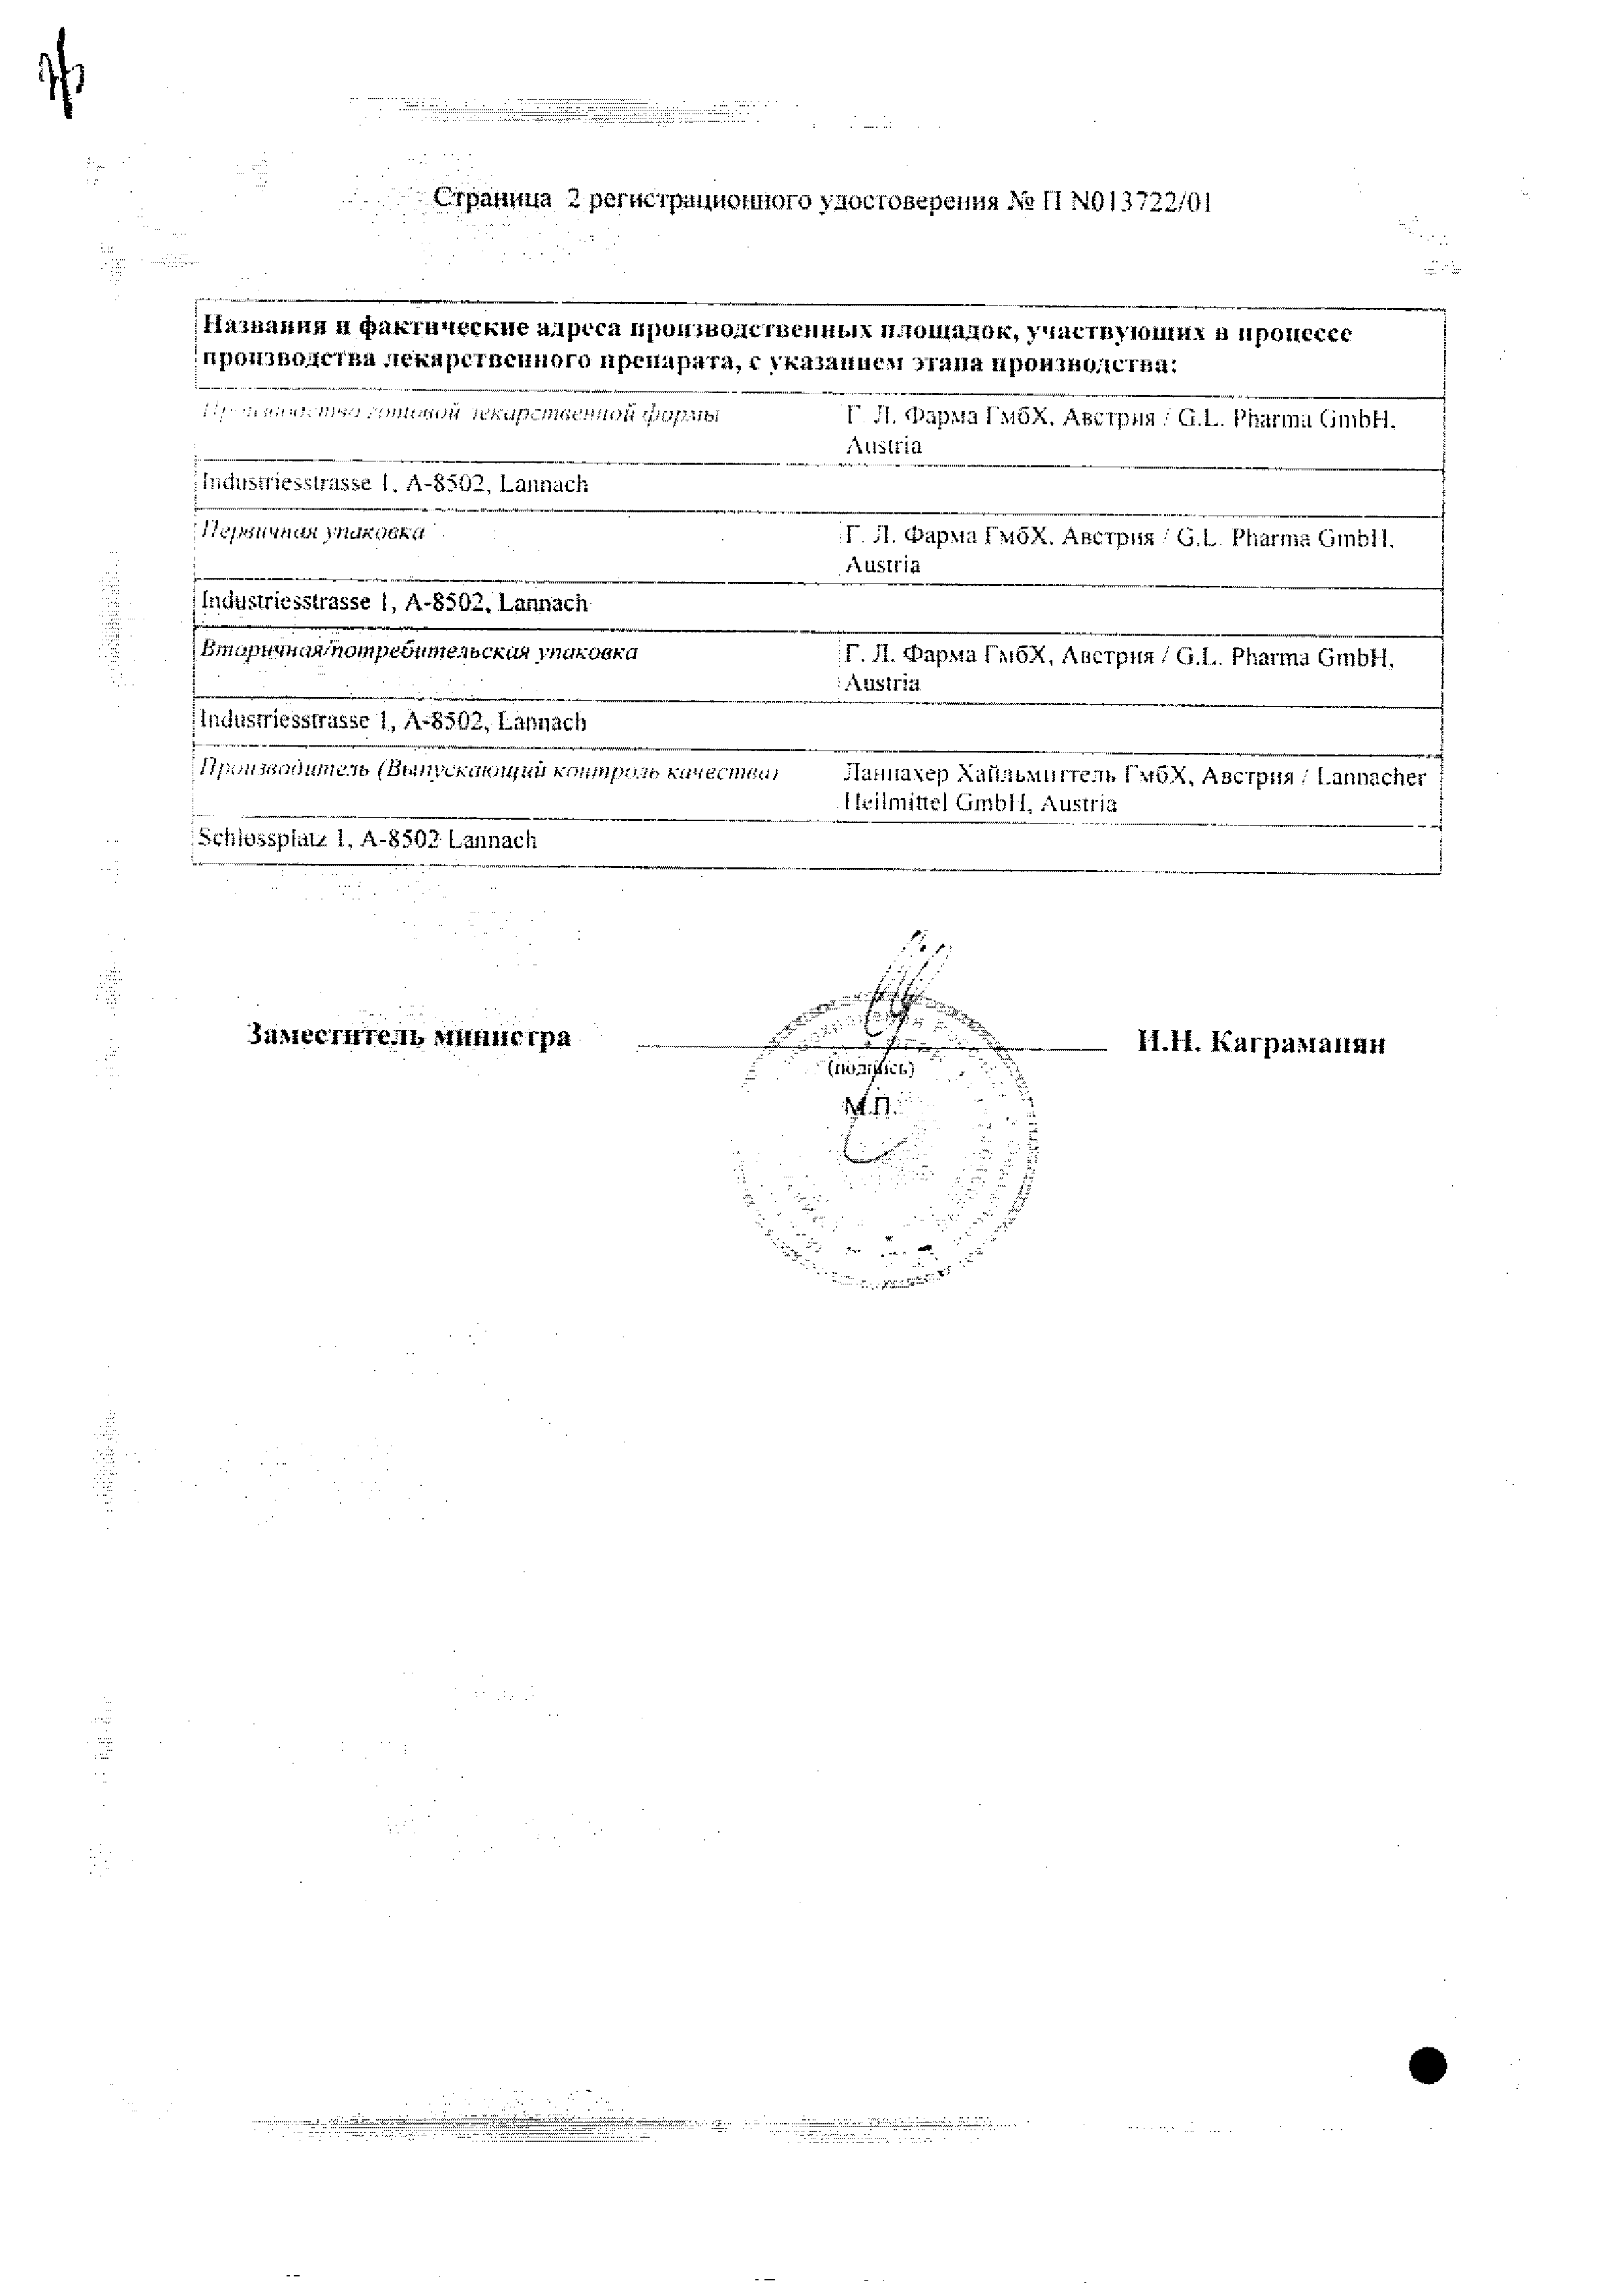 Тромбо АСС сертификат